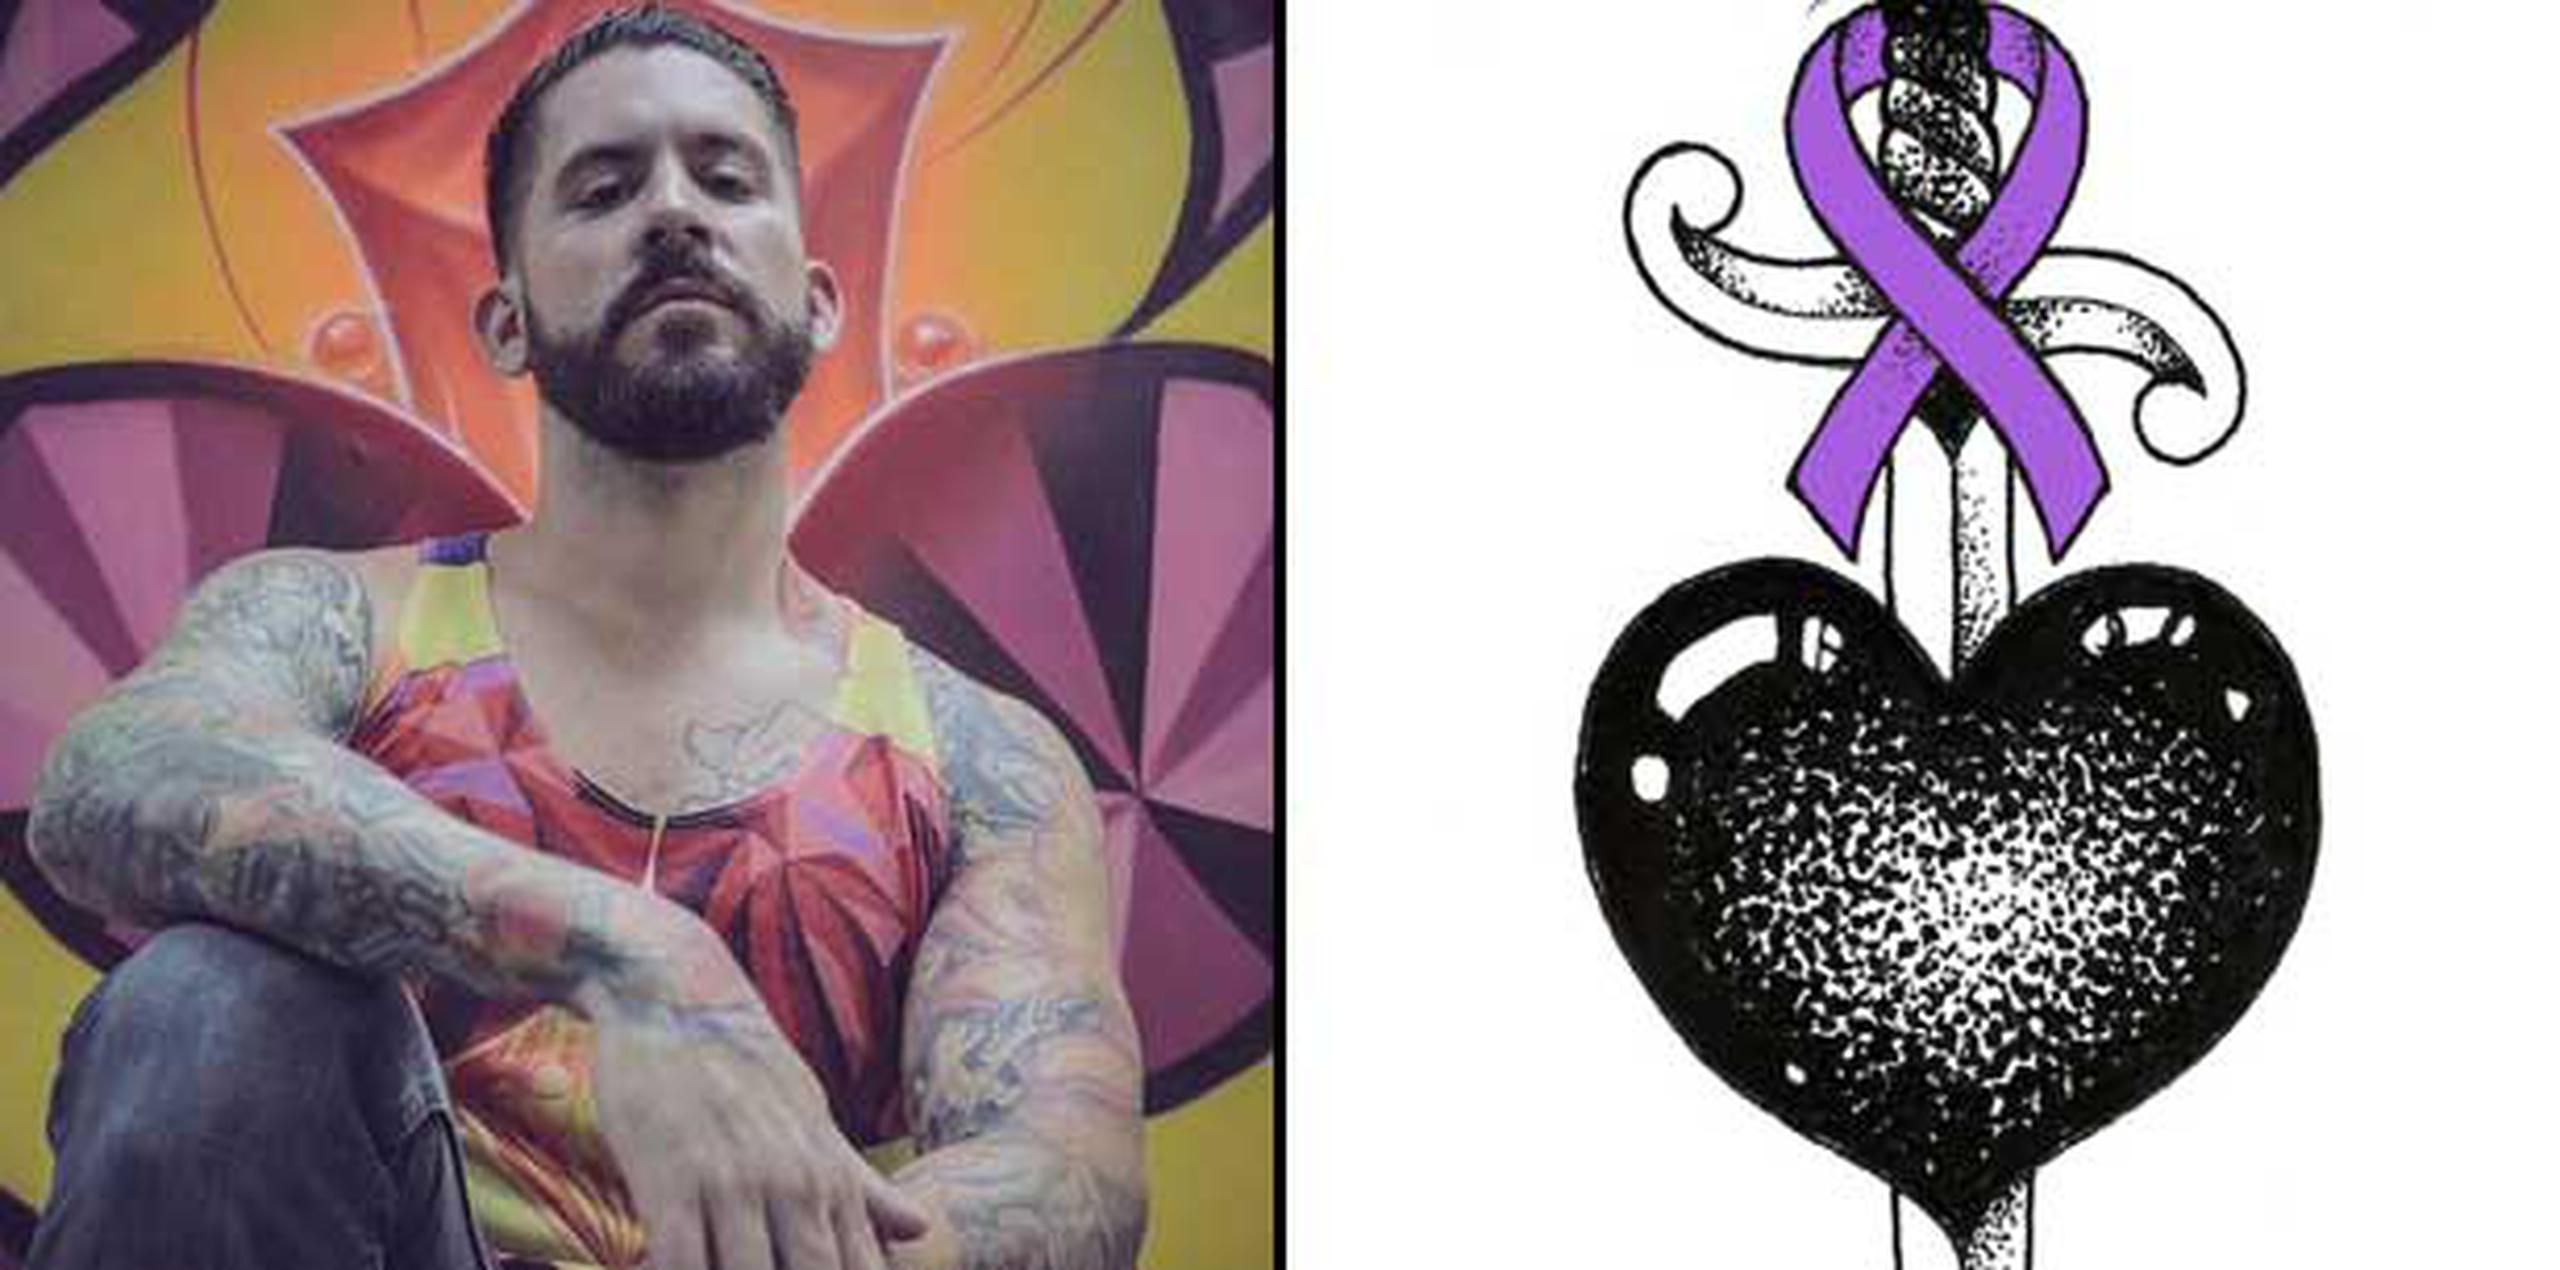 El artista puertorriqueño Juan Salgado hizo un diseño exclusivo para la campaña de tatuajes “Guerreros de vida”. (Suministrada)